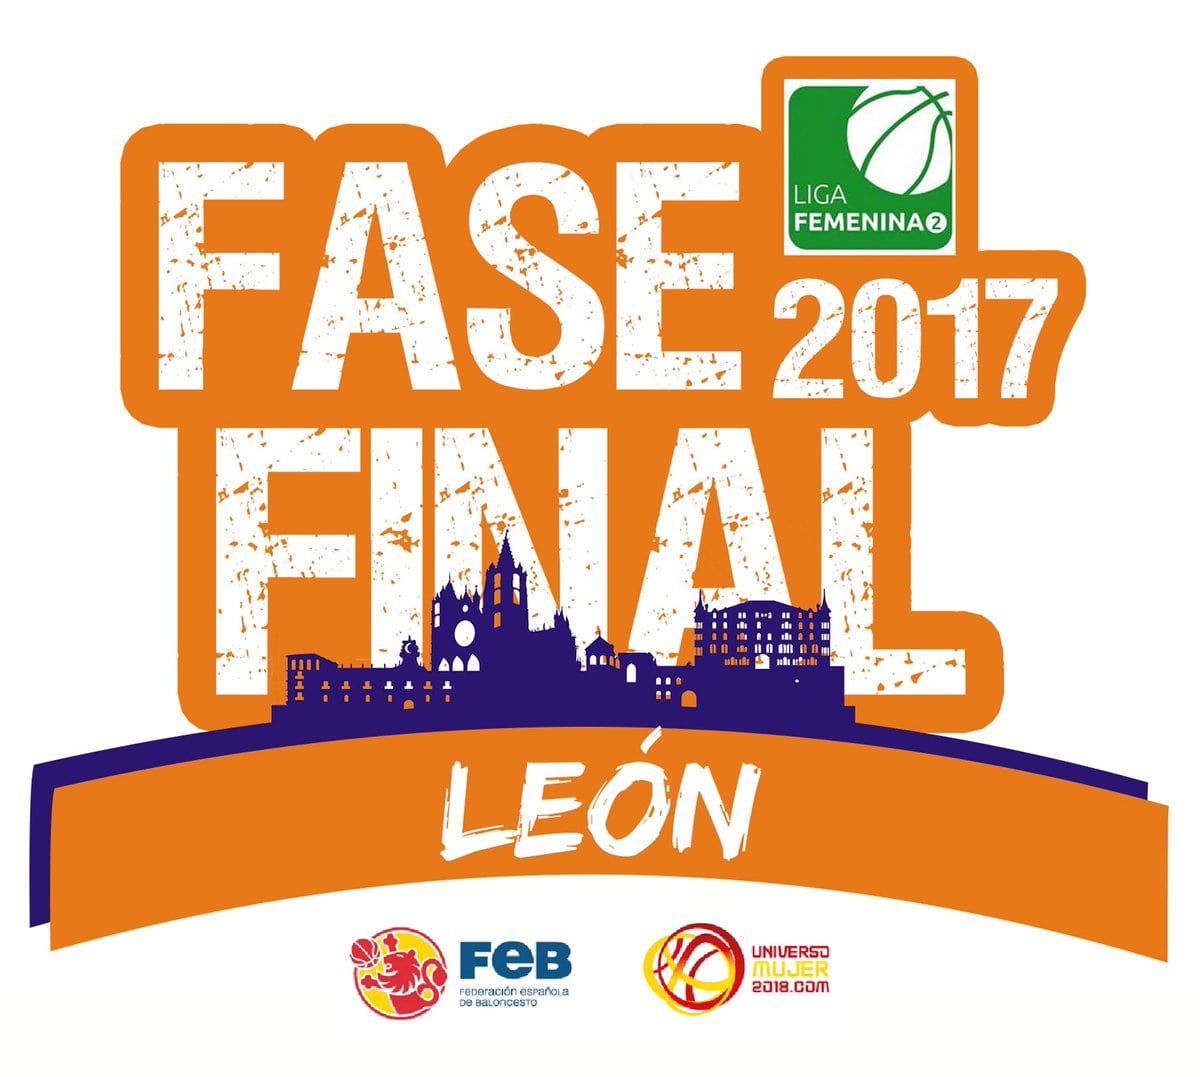 Horarios de la Fase Final de Liga Femenina 2. 20 al 23 de abril en León